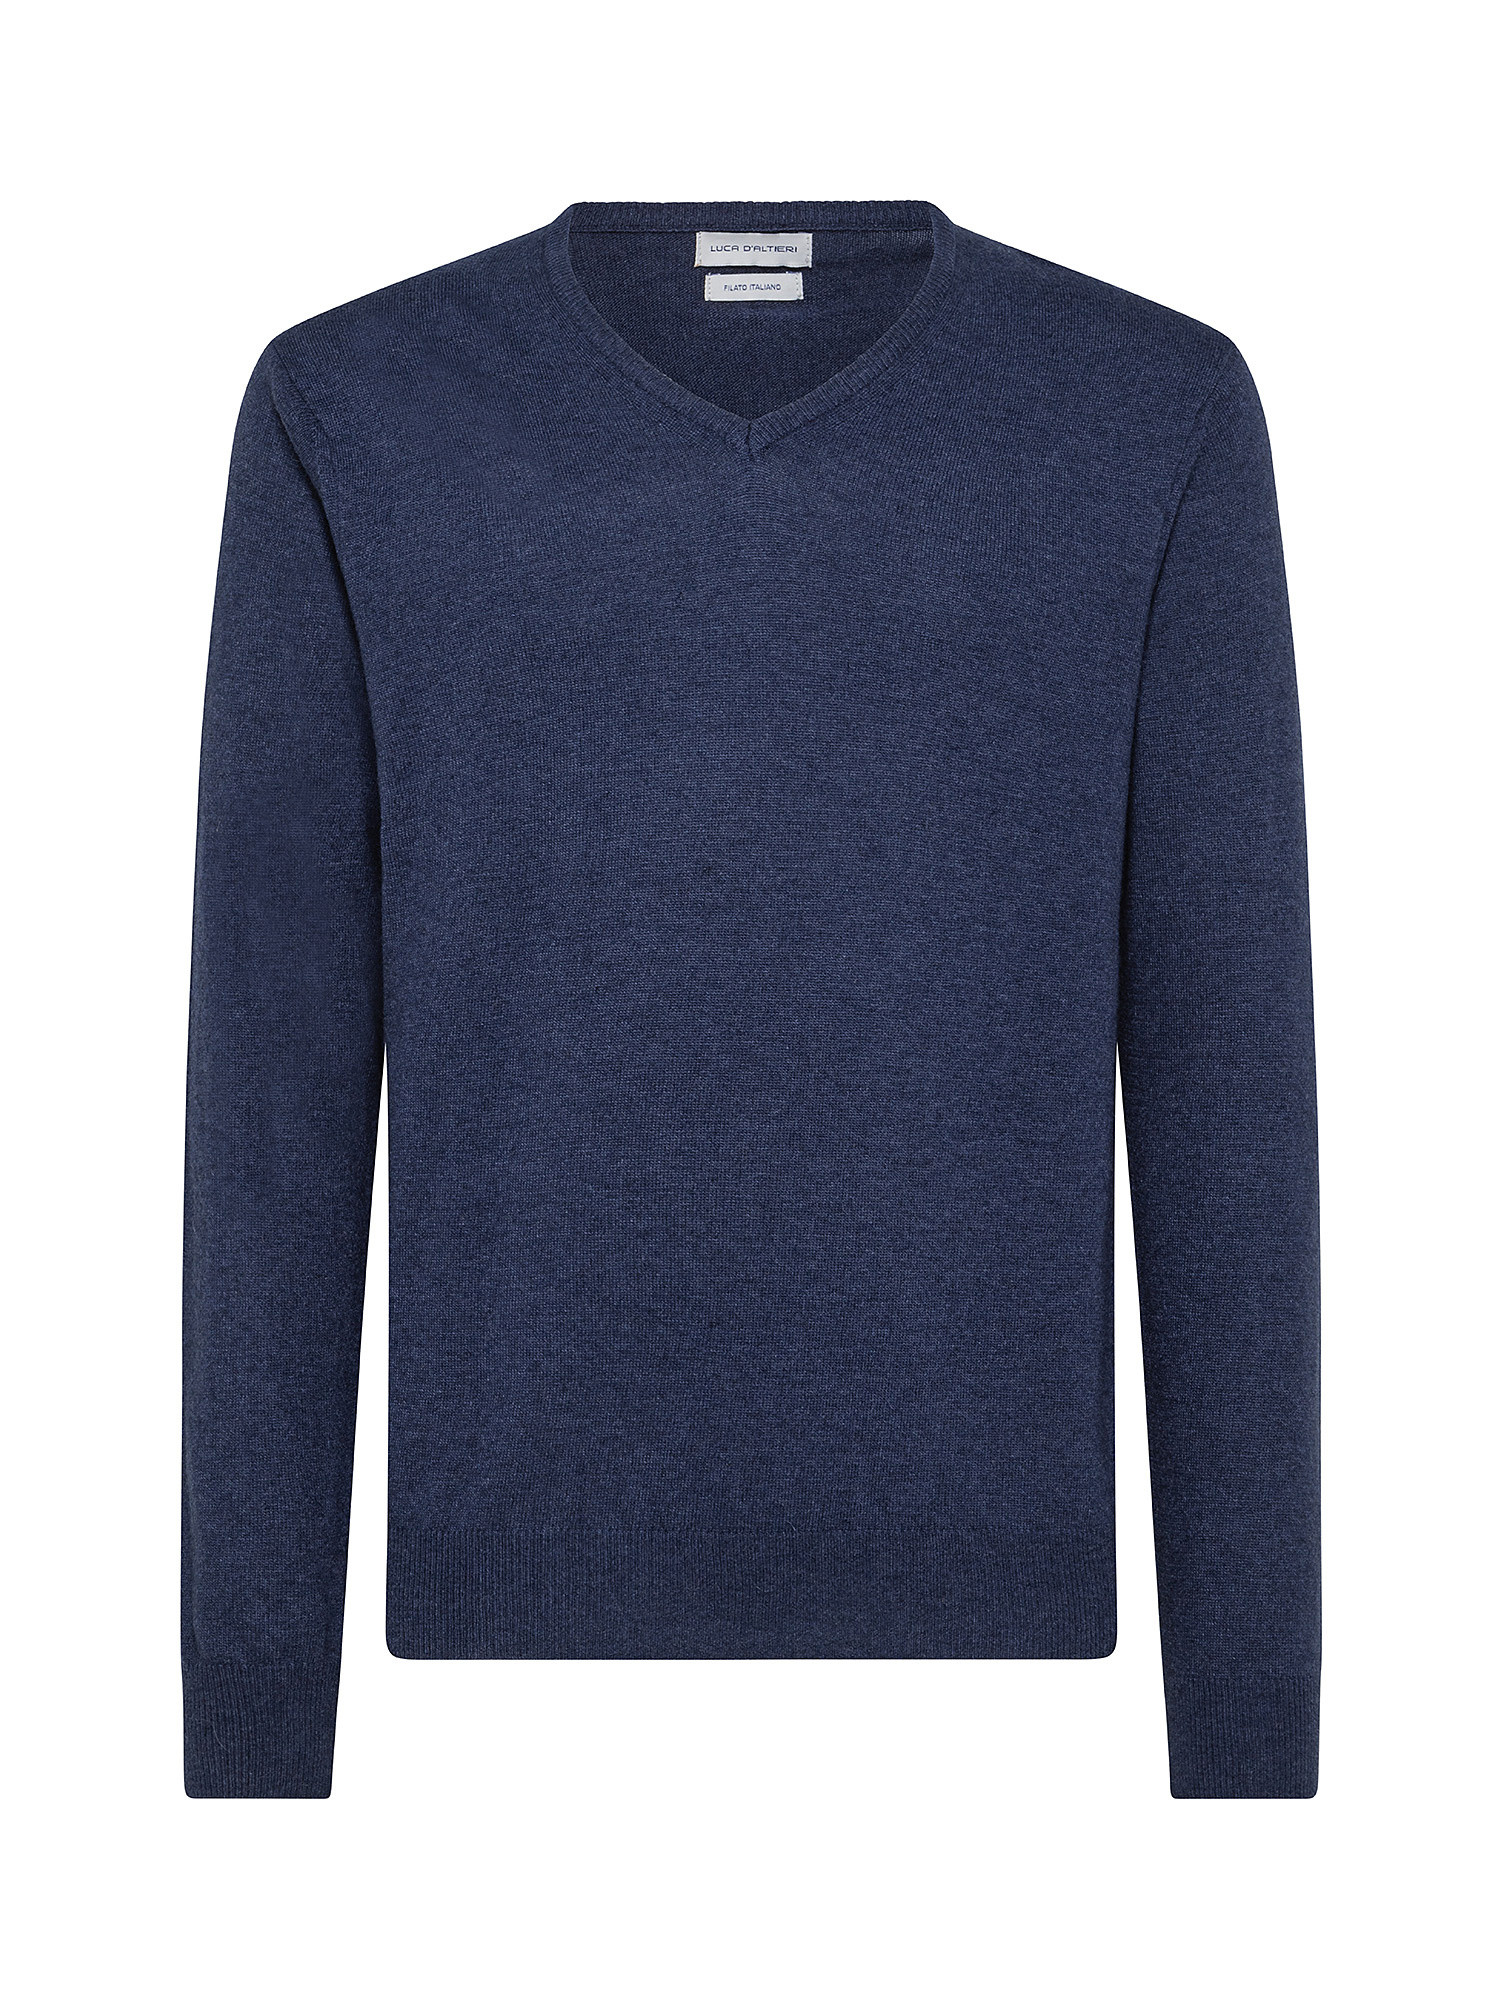 Cashmere Blend V-neck sweater with noble fibers, Denim, large image number 0